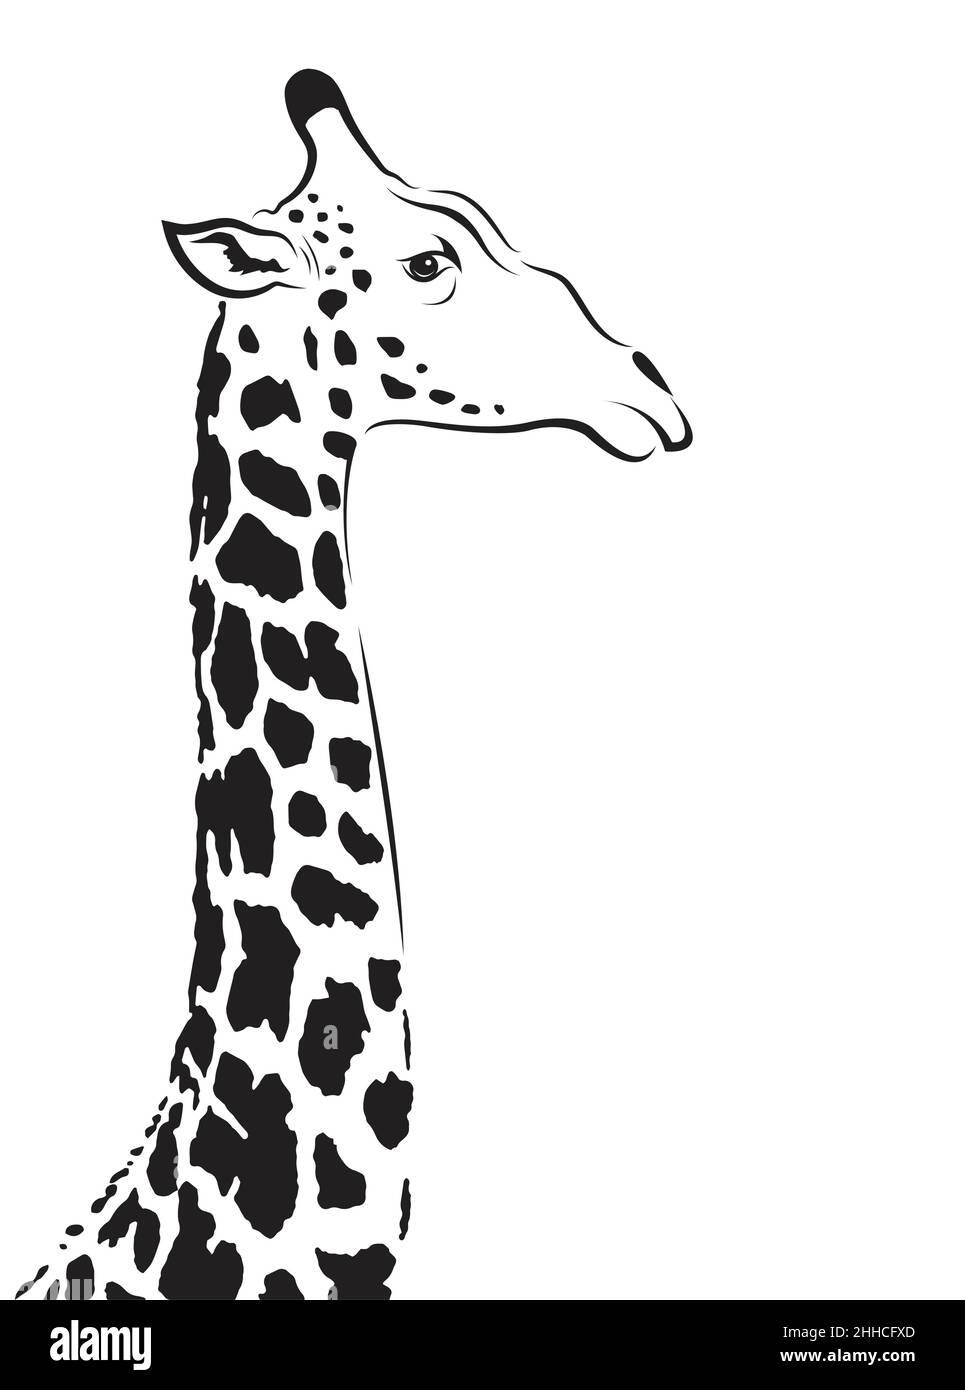 Vecteur de tête de girafe sur fond blanc.Illustration vectorielle superposée facile à modifier. Illustration de Vecteur